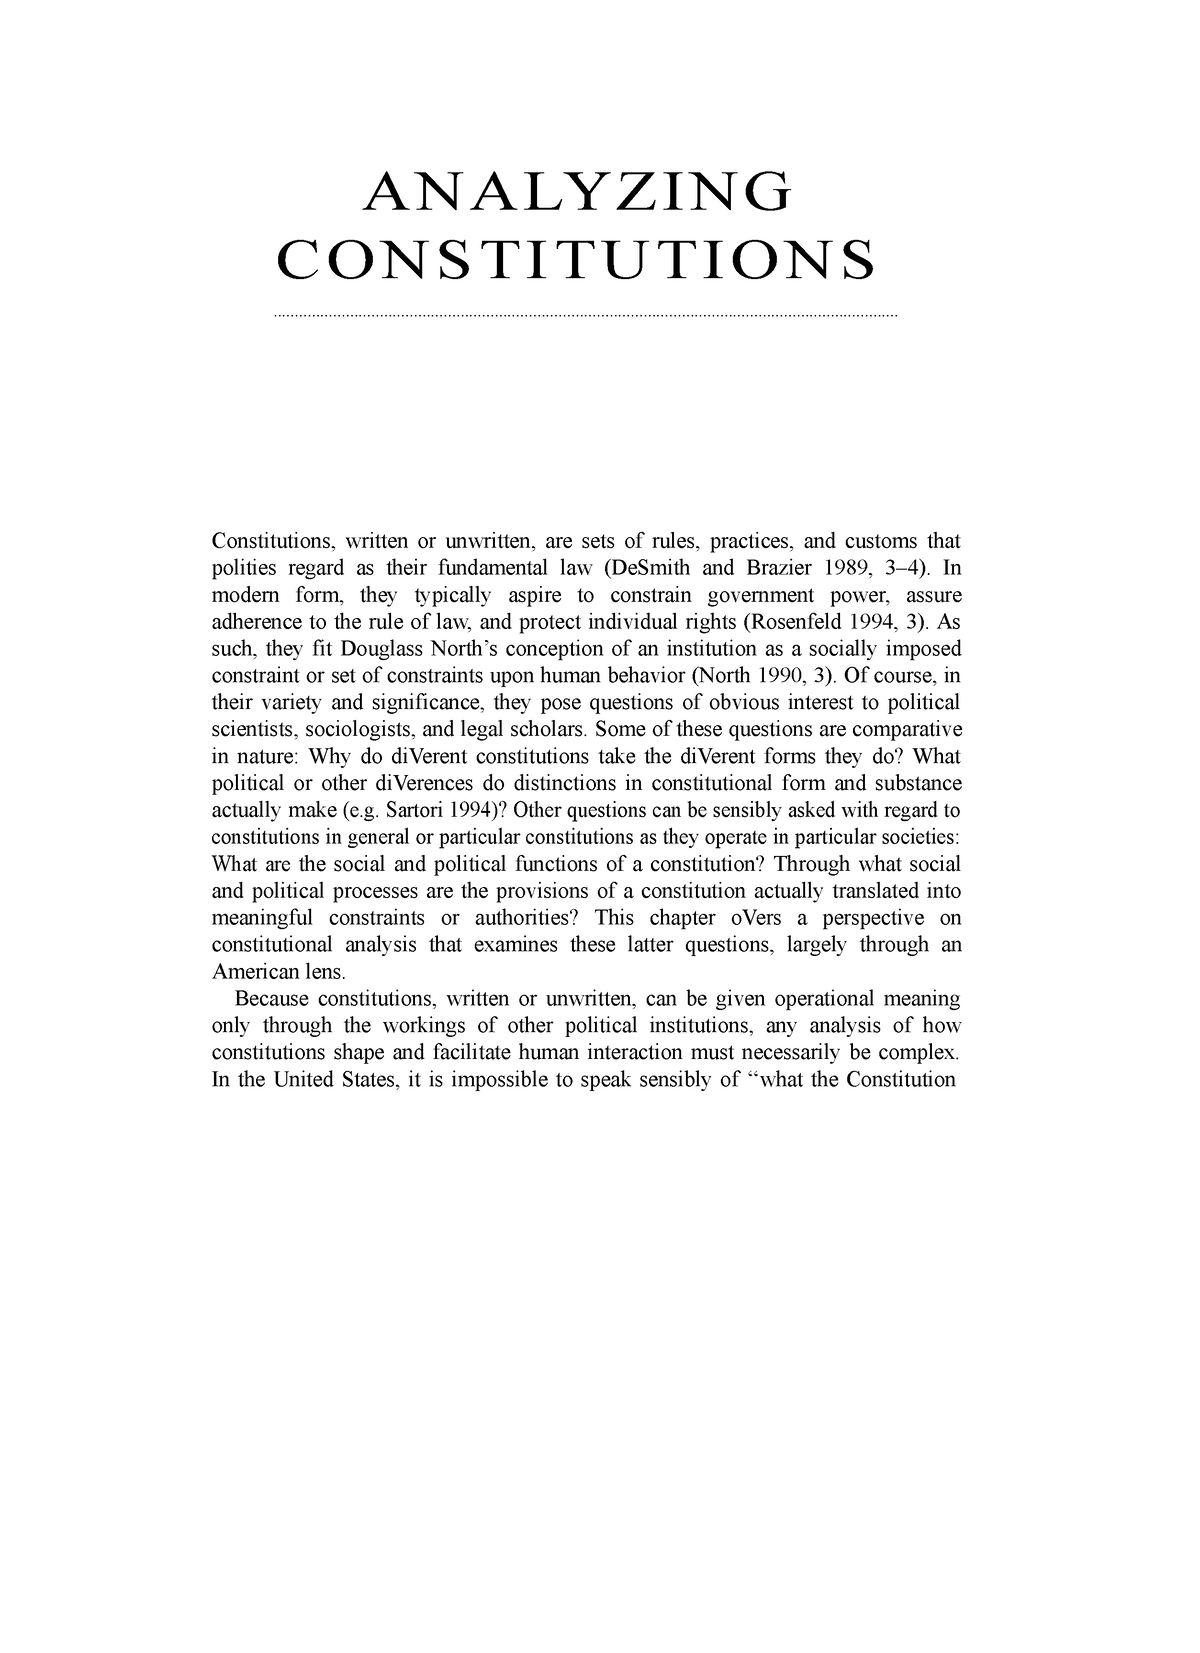 Analyzing Constitutions - ANALYZING CONSTITUTIONS - Studocu